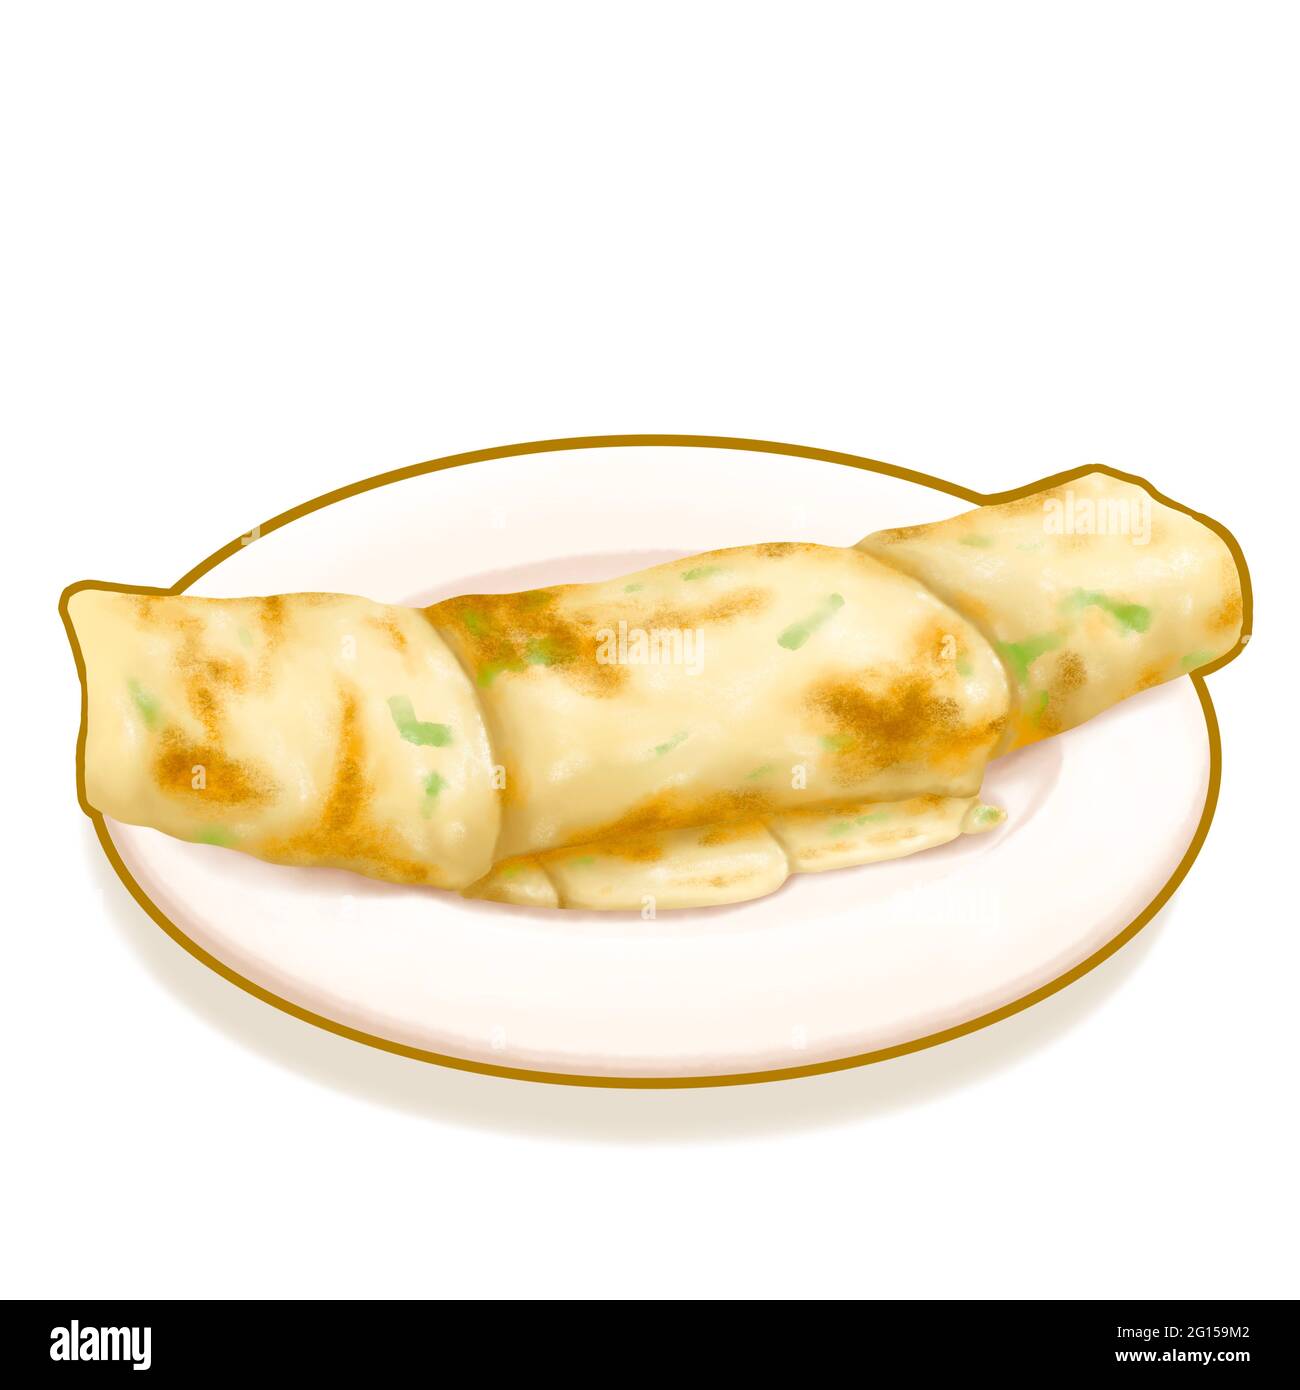 Rollo de ternera panqueque escalonera de Taiwán, una pintura digital de crepe de panqueque frito tradicional taiwanés con cebolleta y carne en el plato ráster 3D illustrati Foto de stock